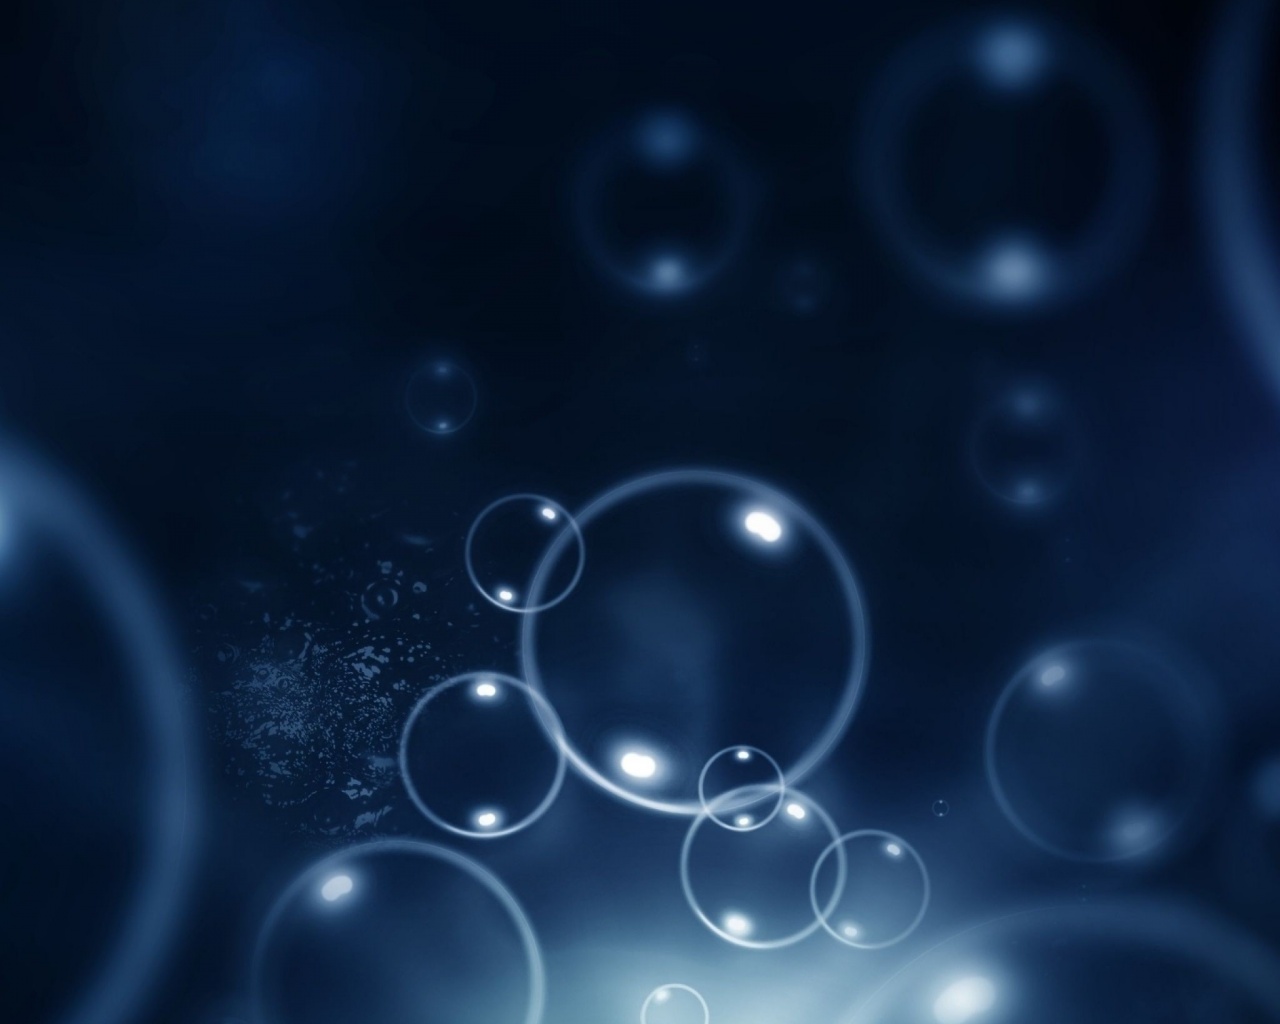 Пузыри в темной воде обои